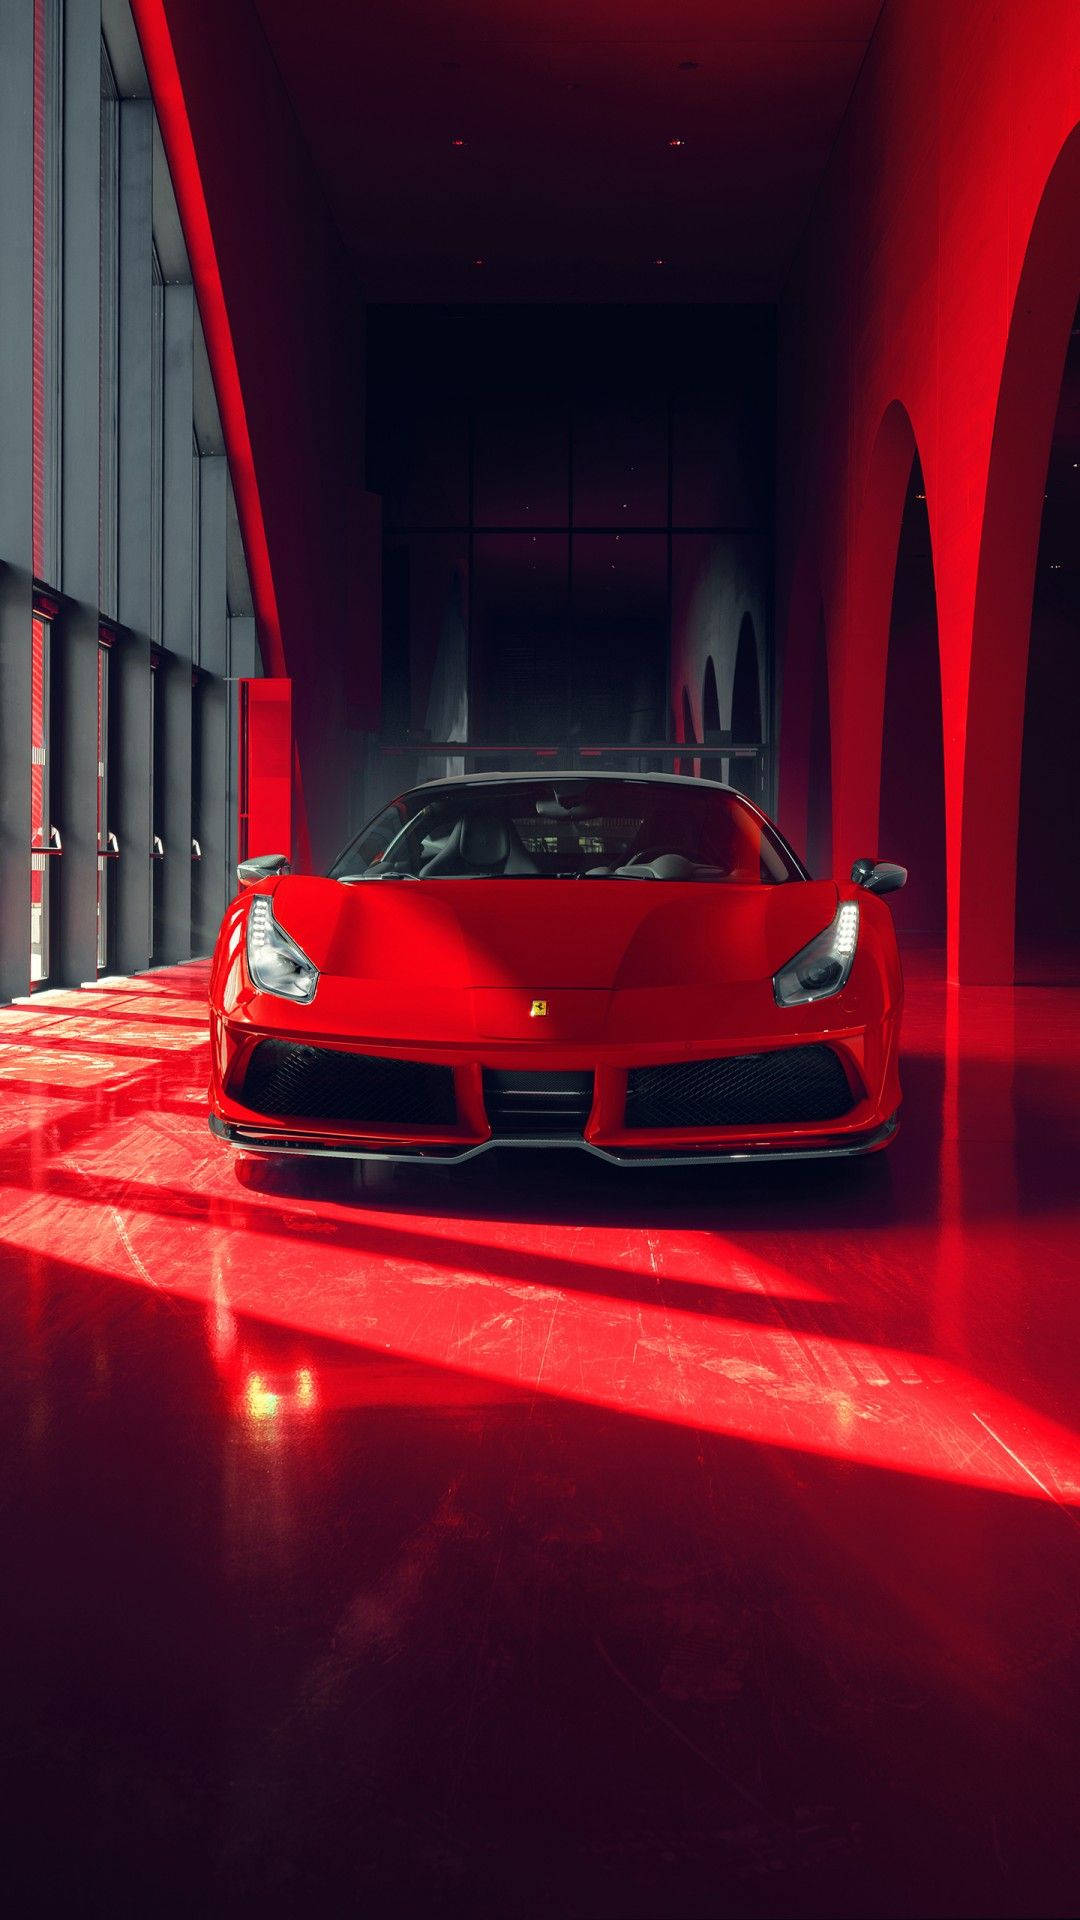 Futuristic Ferrari Iphone